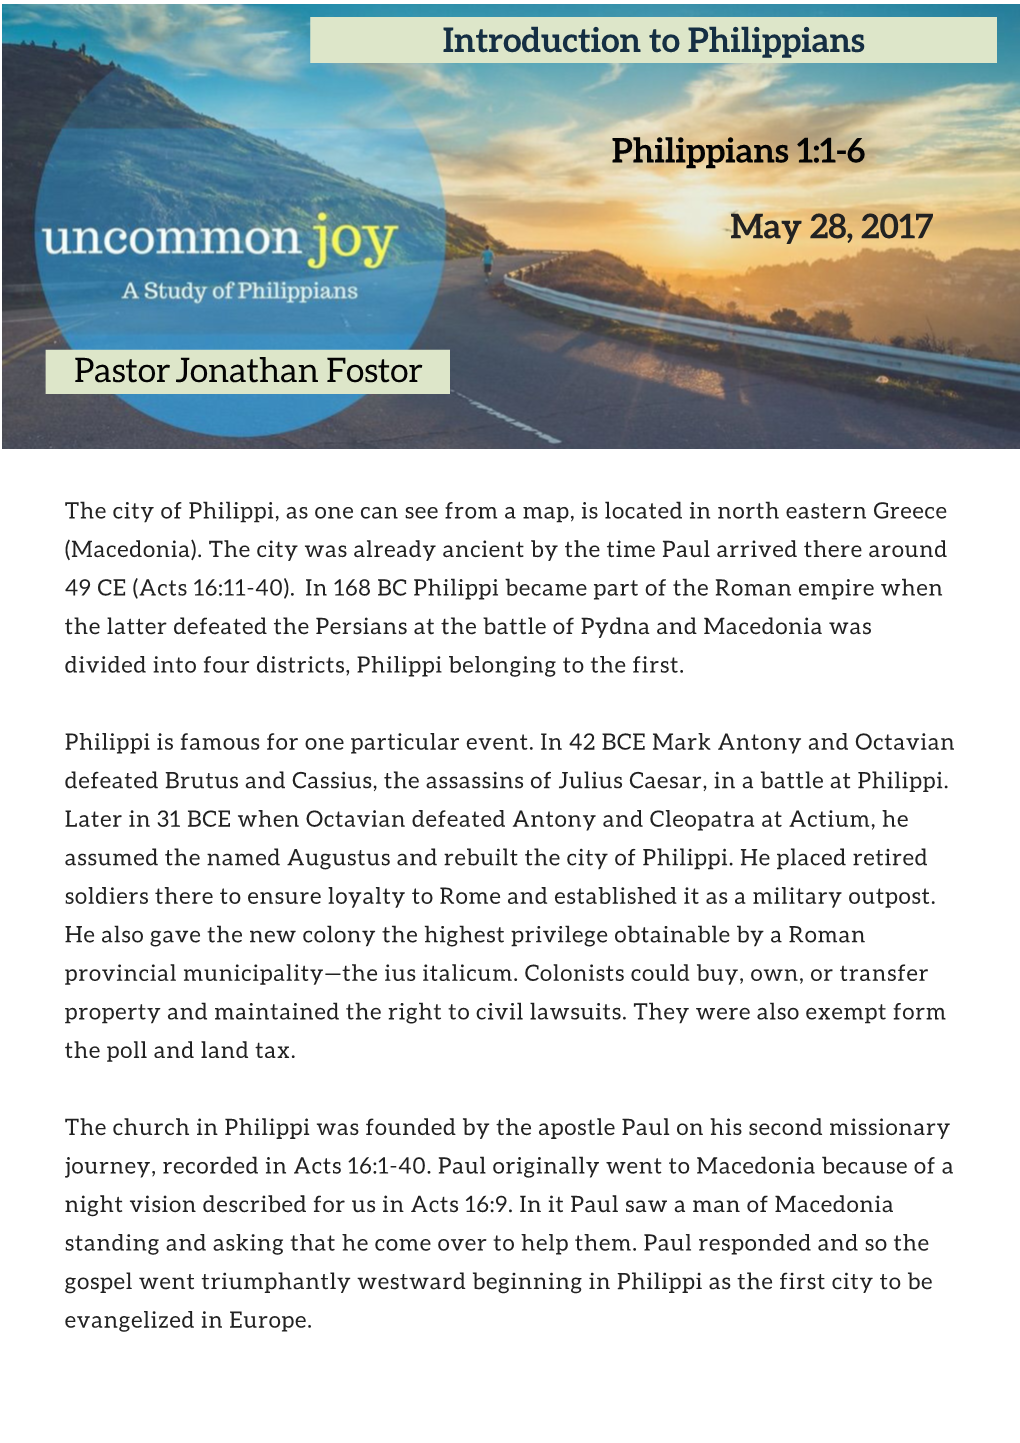 Uncommon Joy Part 1: Introduction to Philippians